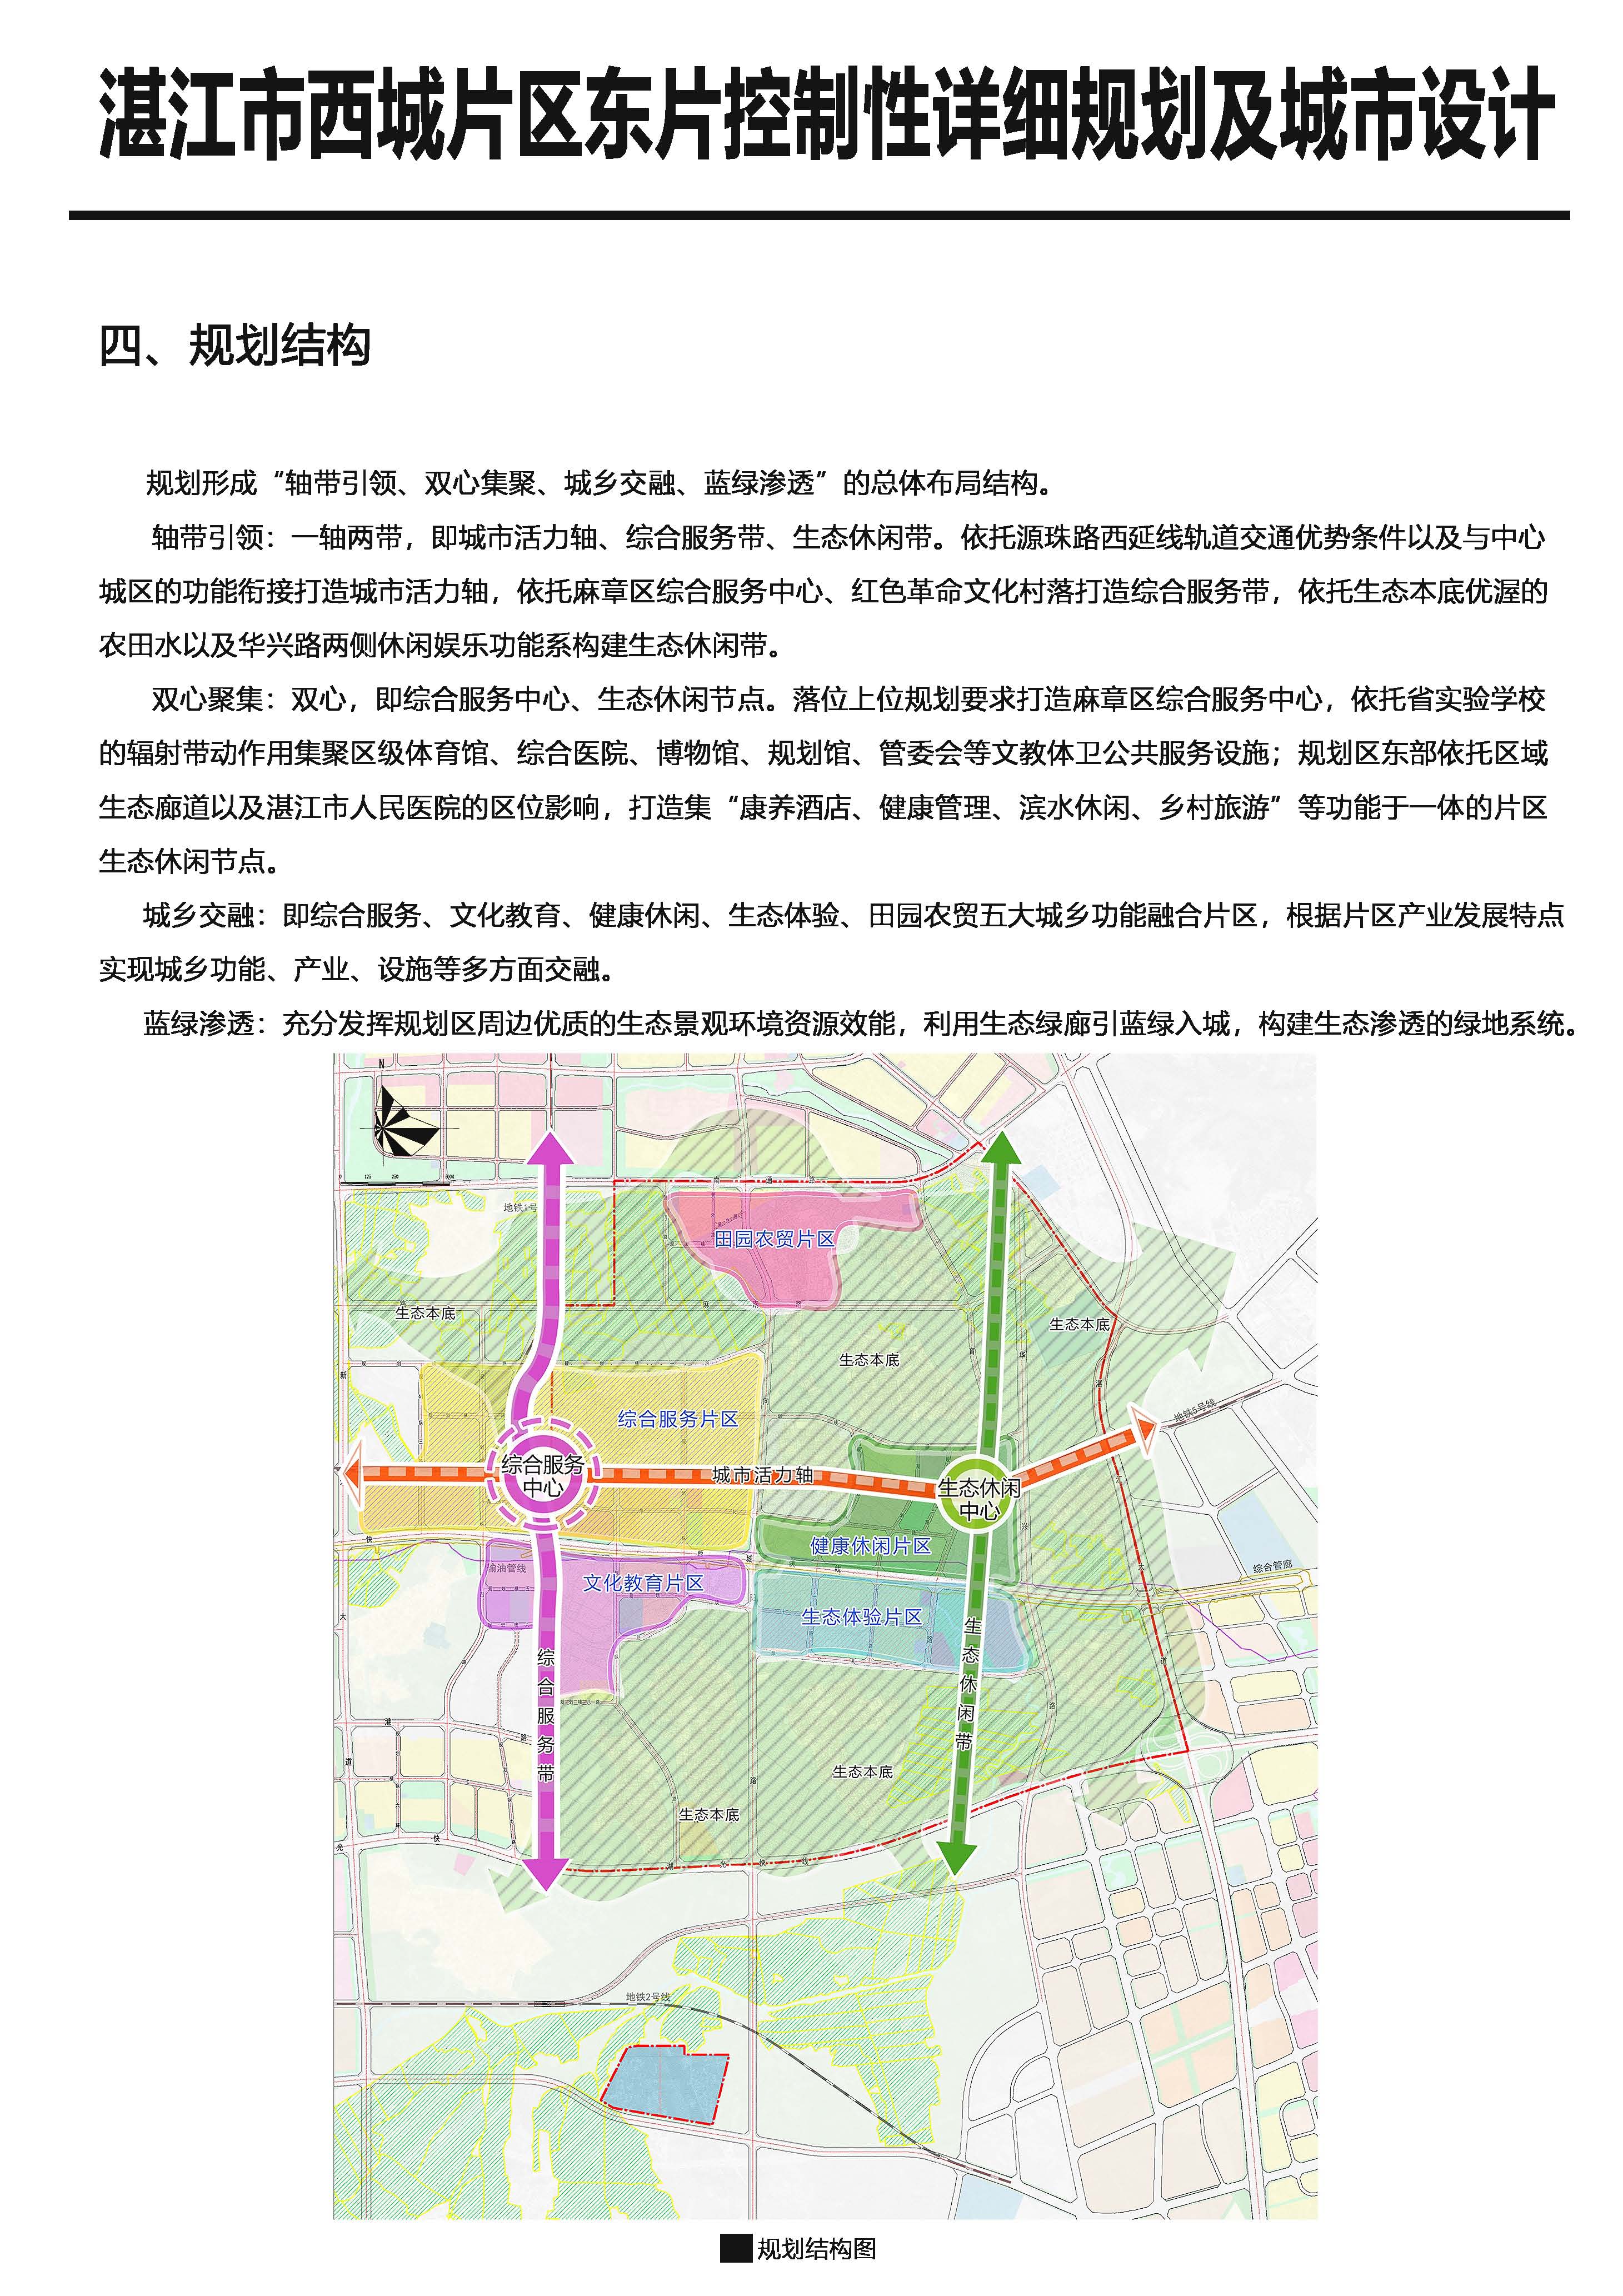 《湛江西城东片区控制性详细规划及城市设计》批后公告_页面_5.jpg